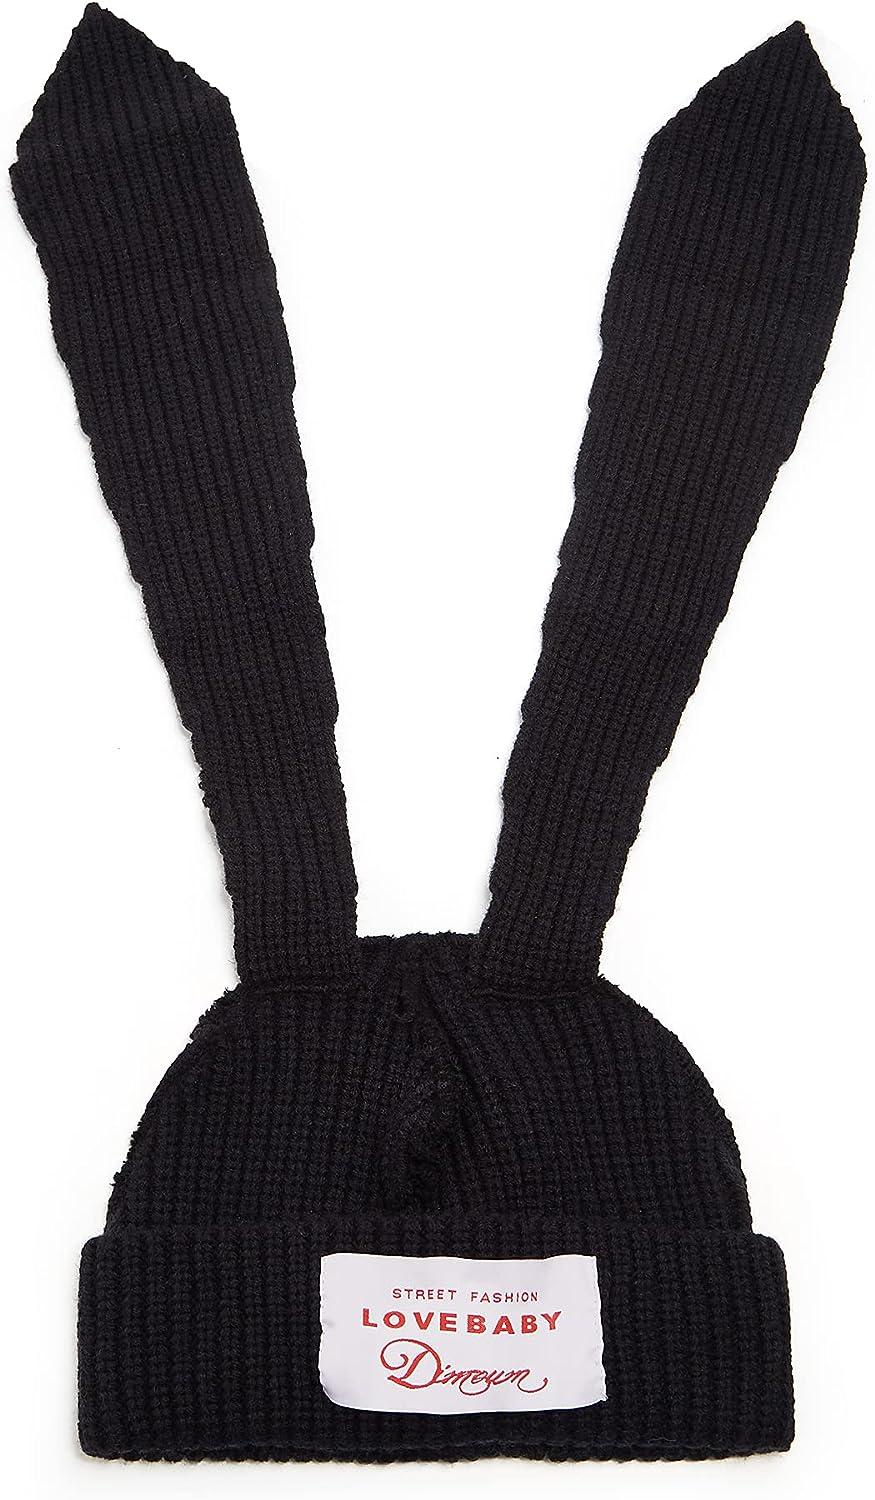 Knit Beanie Hats for Women Bunny Winter Cap Faux Fur Warm Knit Rabbit Crochet Skull Cap Ski Outdoor Slouchy Hat